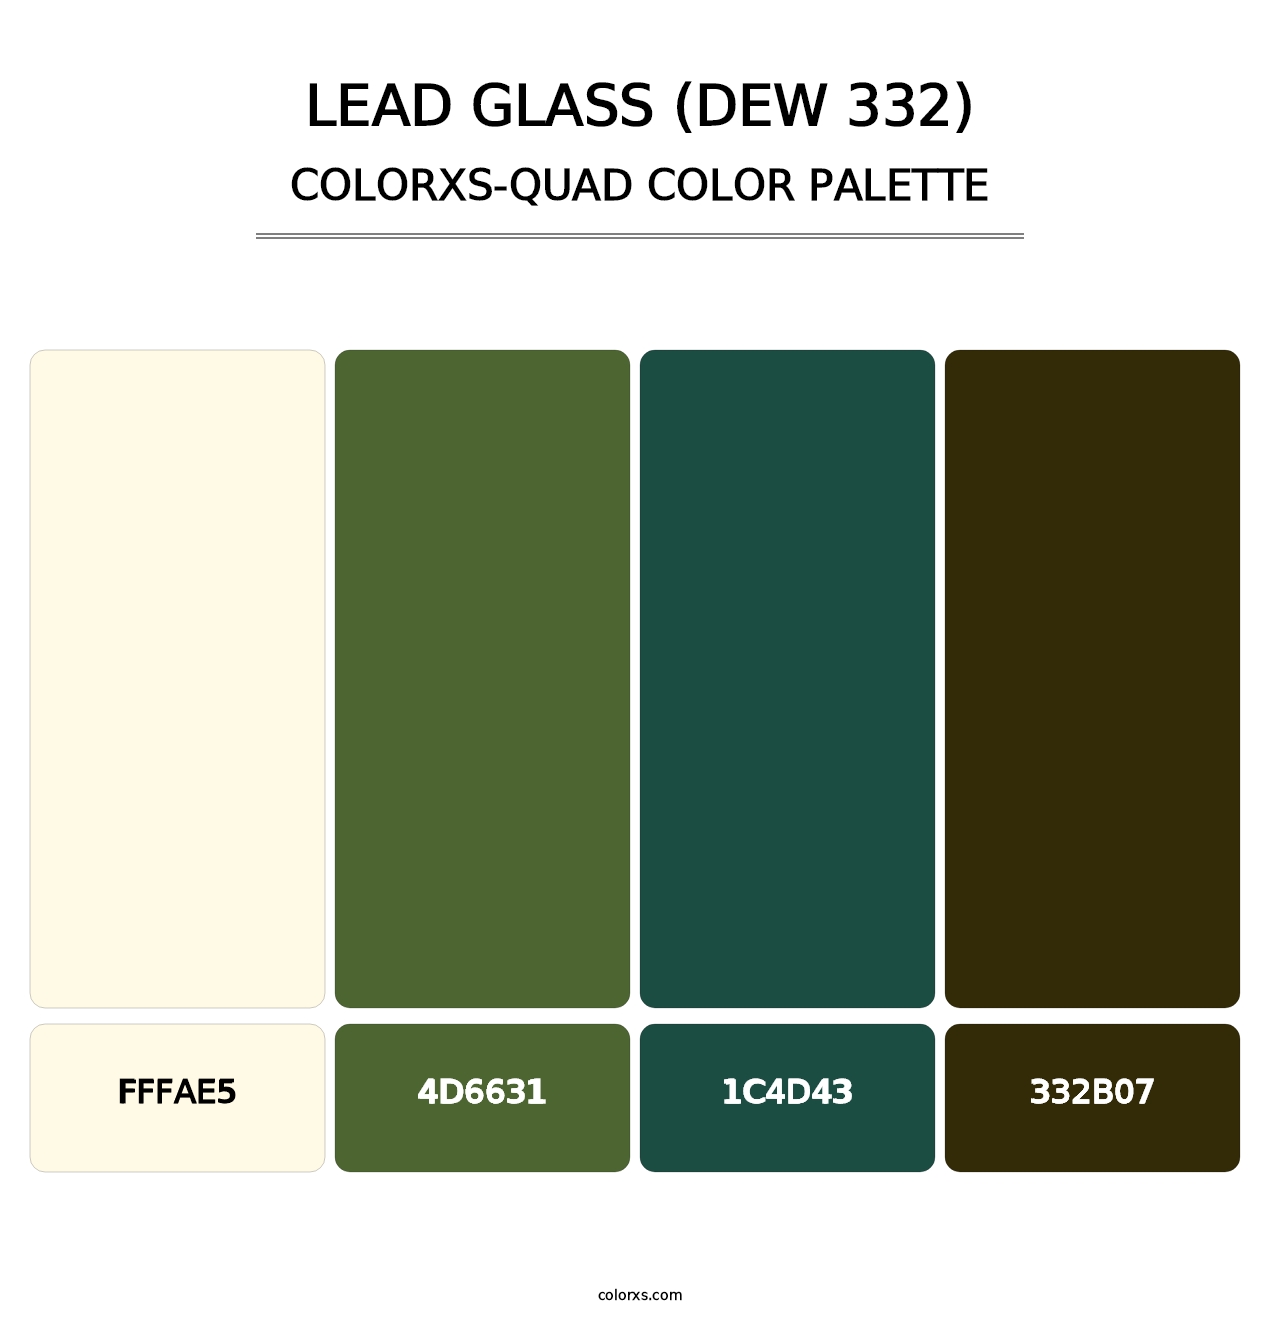 Lead Glass (DEW 332) - Colorxs Quad Palette